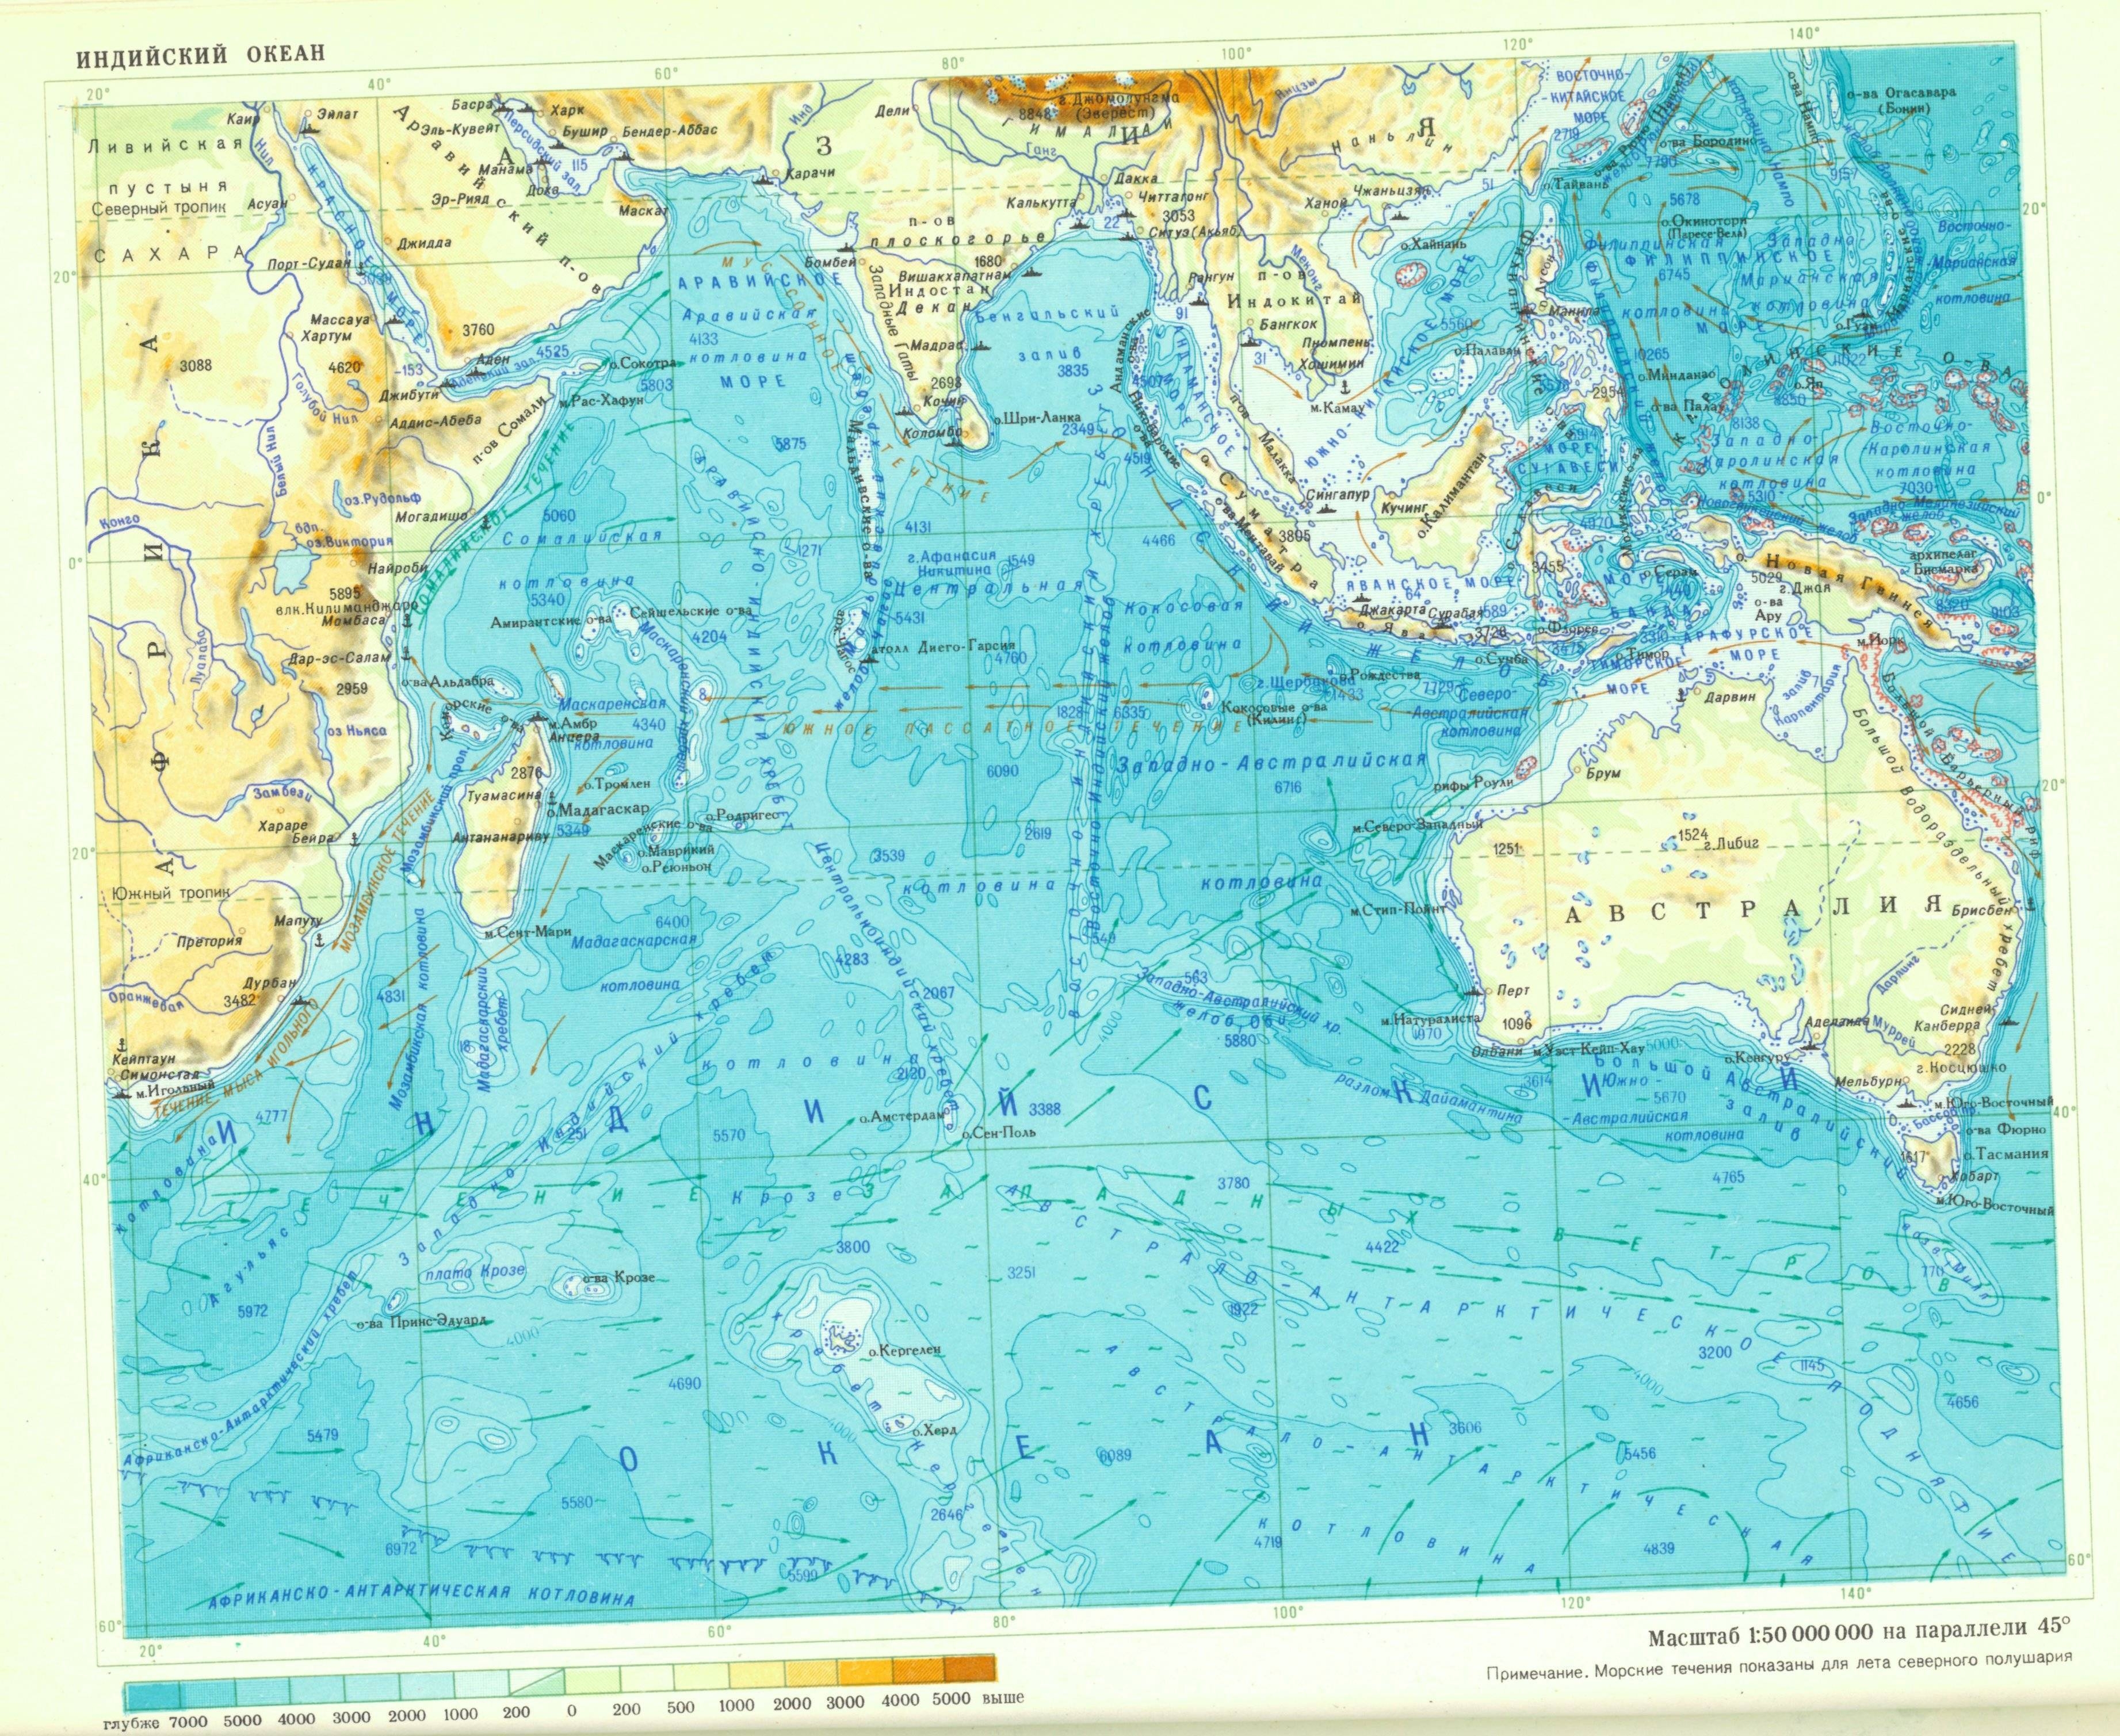 Южная часть индийского океана. Проливы Тихого океана на карте. Проливы индийского океана. Индийский океан карта подробная. Тихий океан физическая карта подробная.